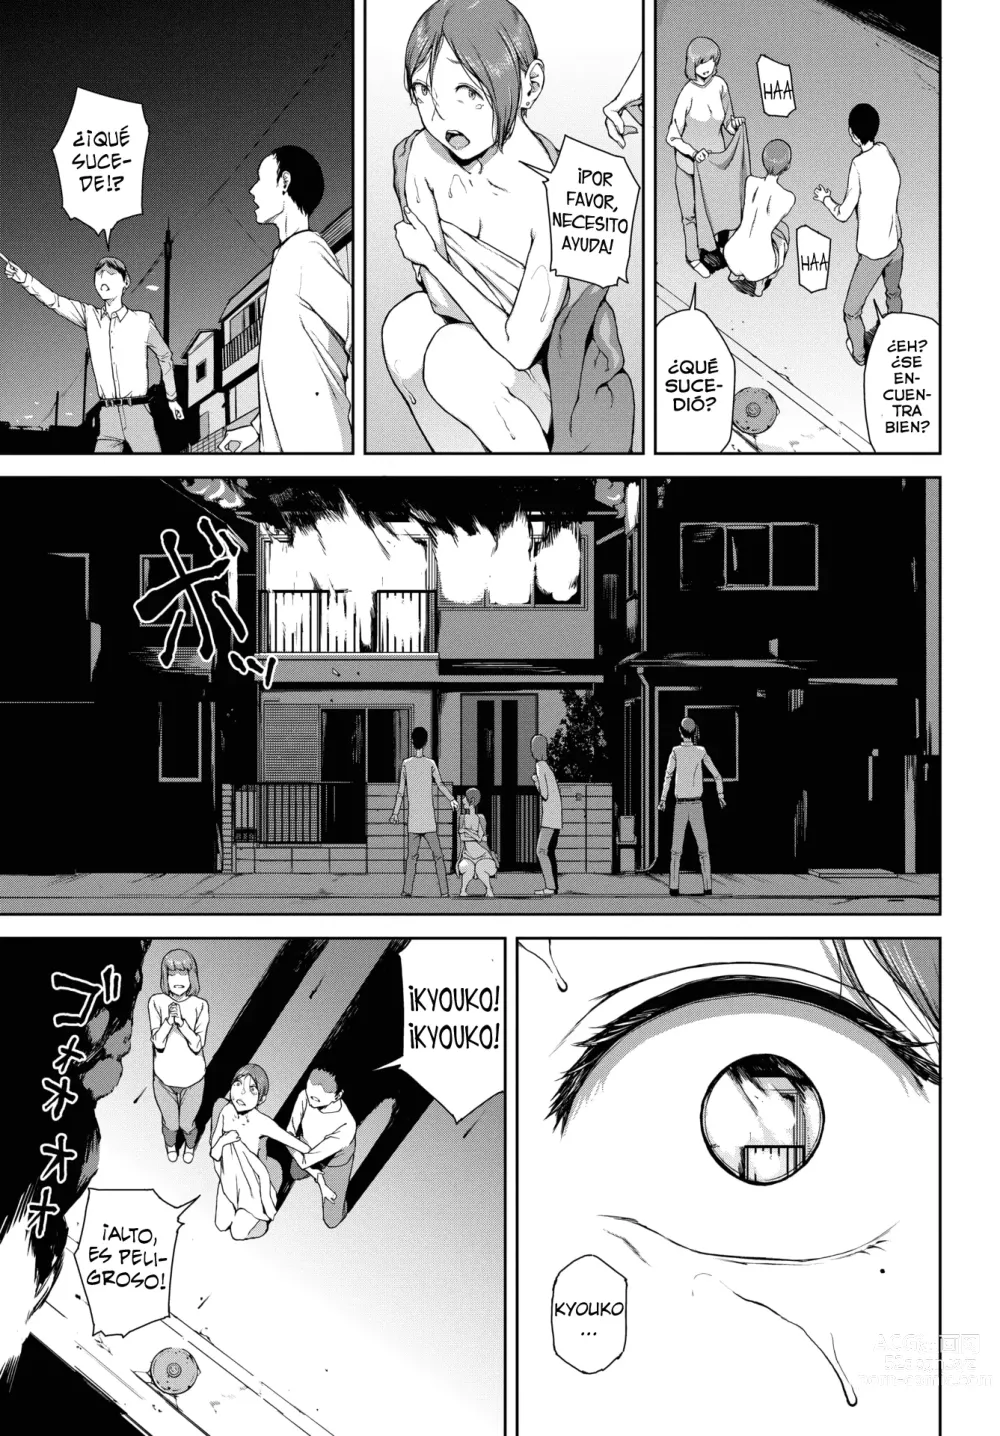 Page 23 of manga Yoriko Parte 02